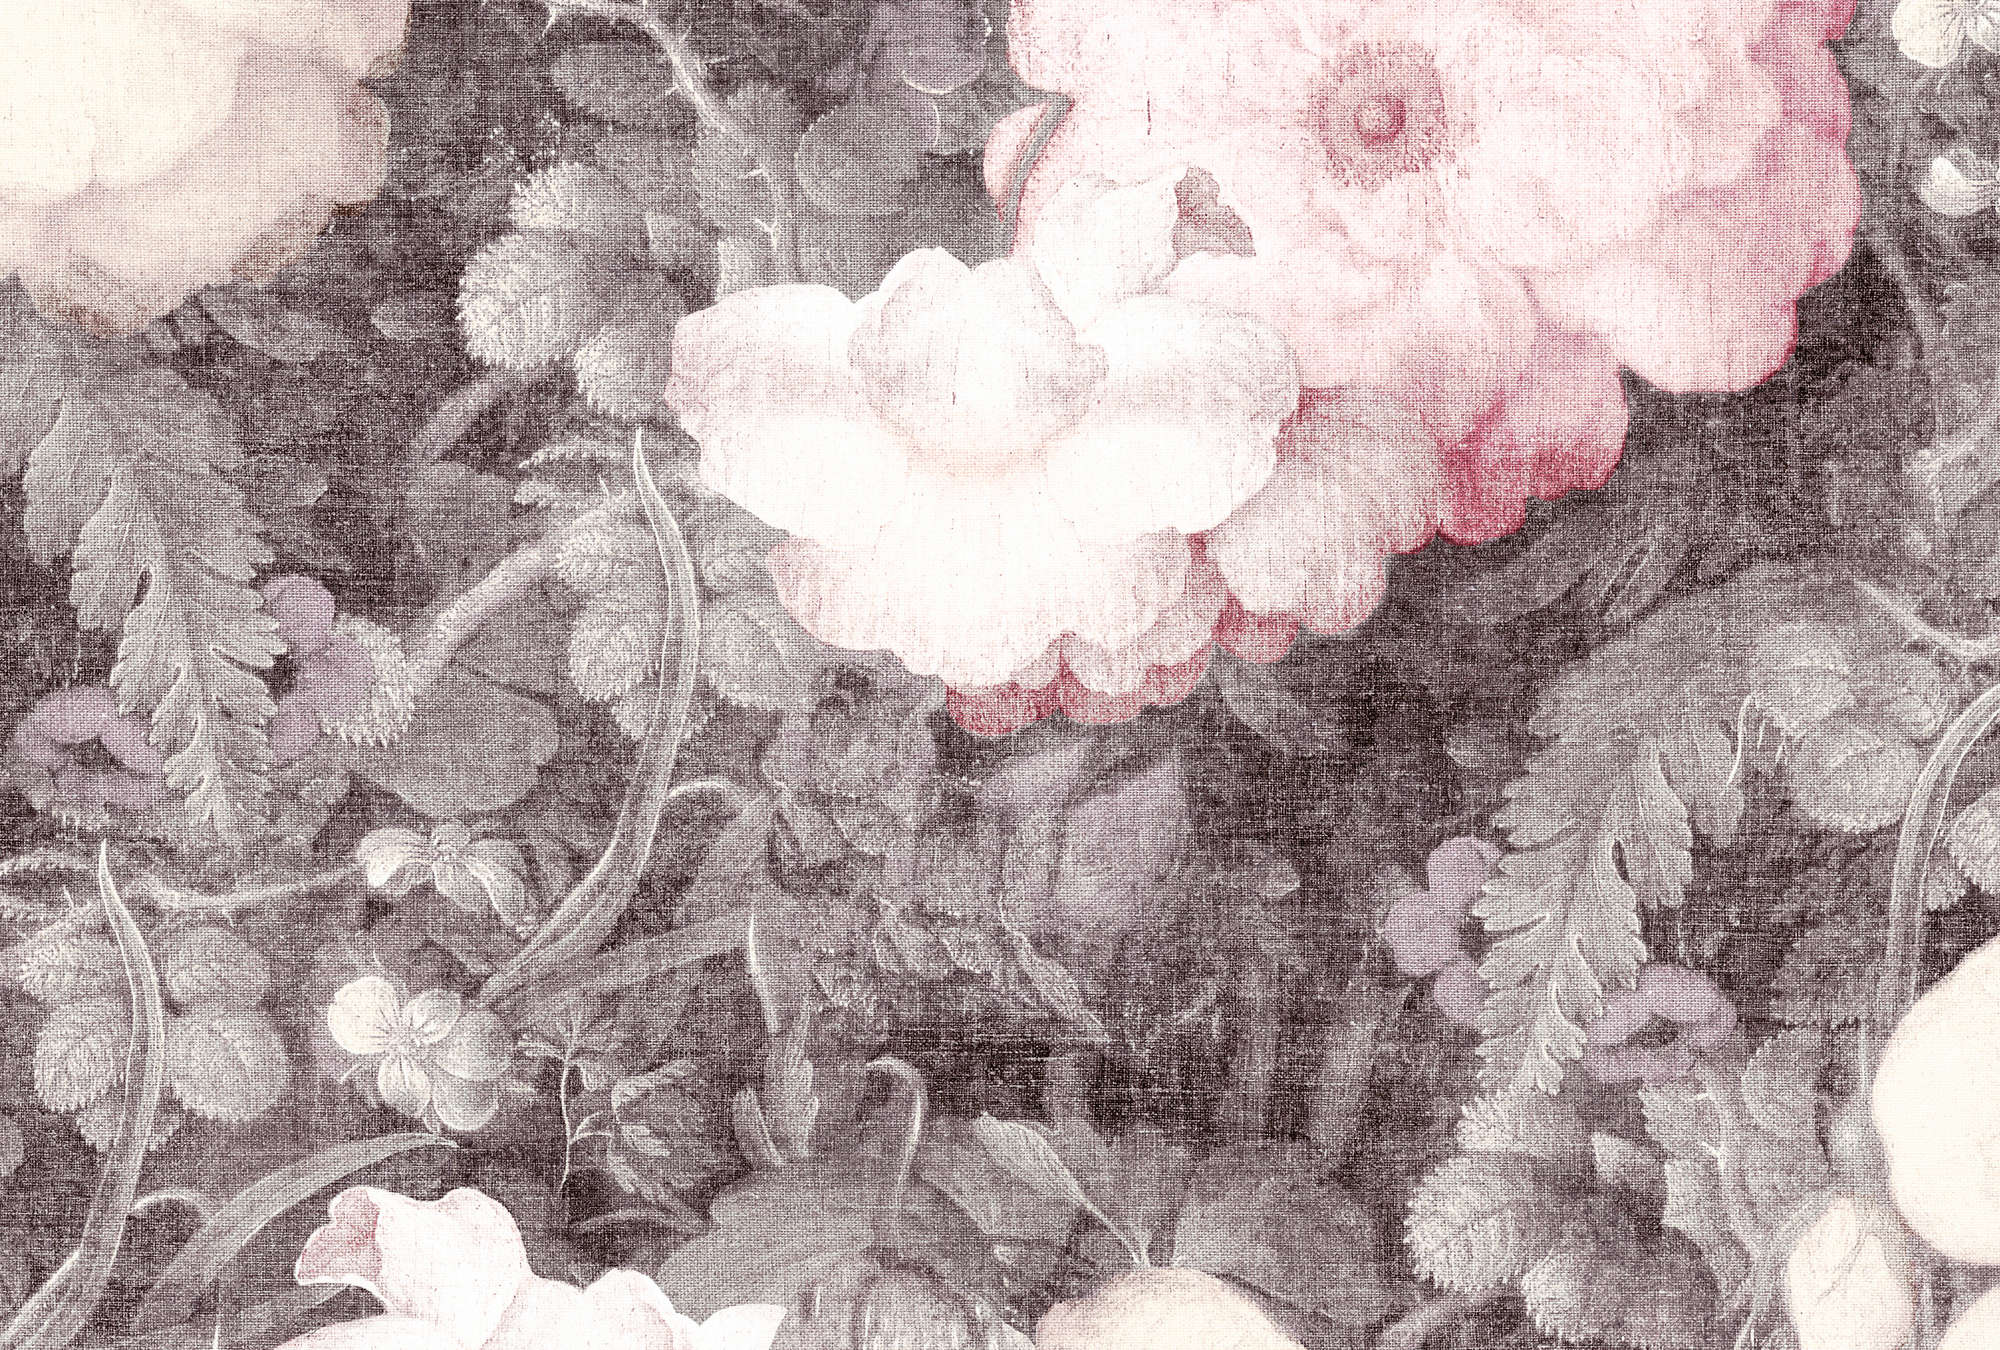             Flowers mural in painting look, vintage & linen - pink, grey
        